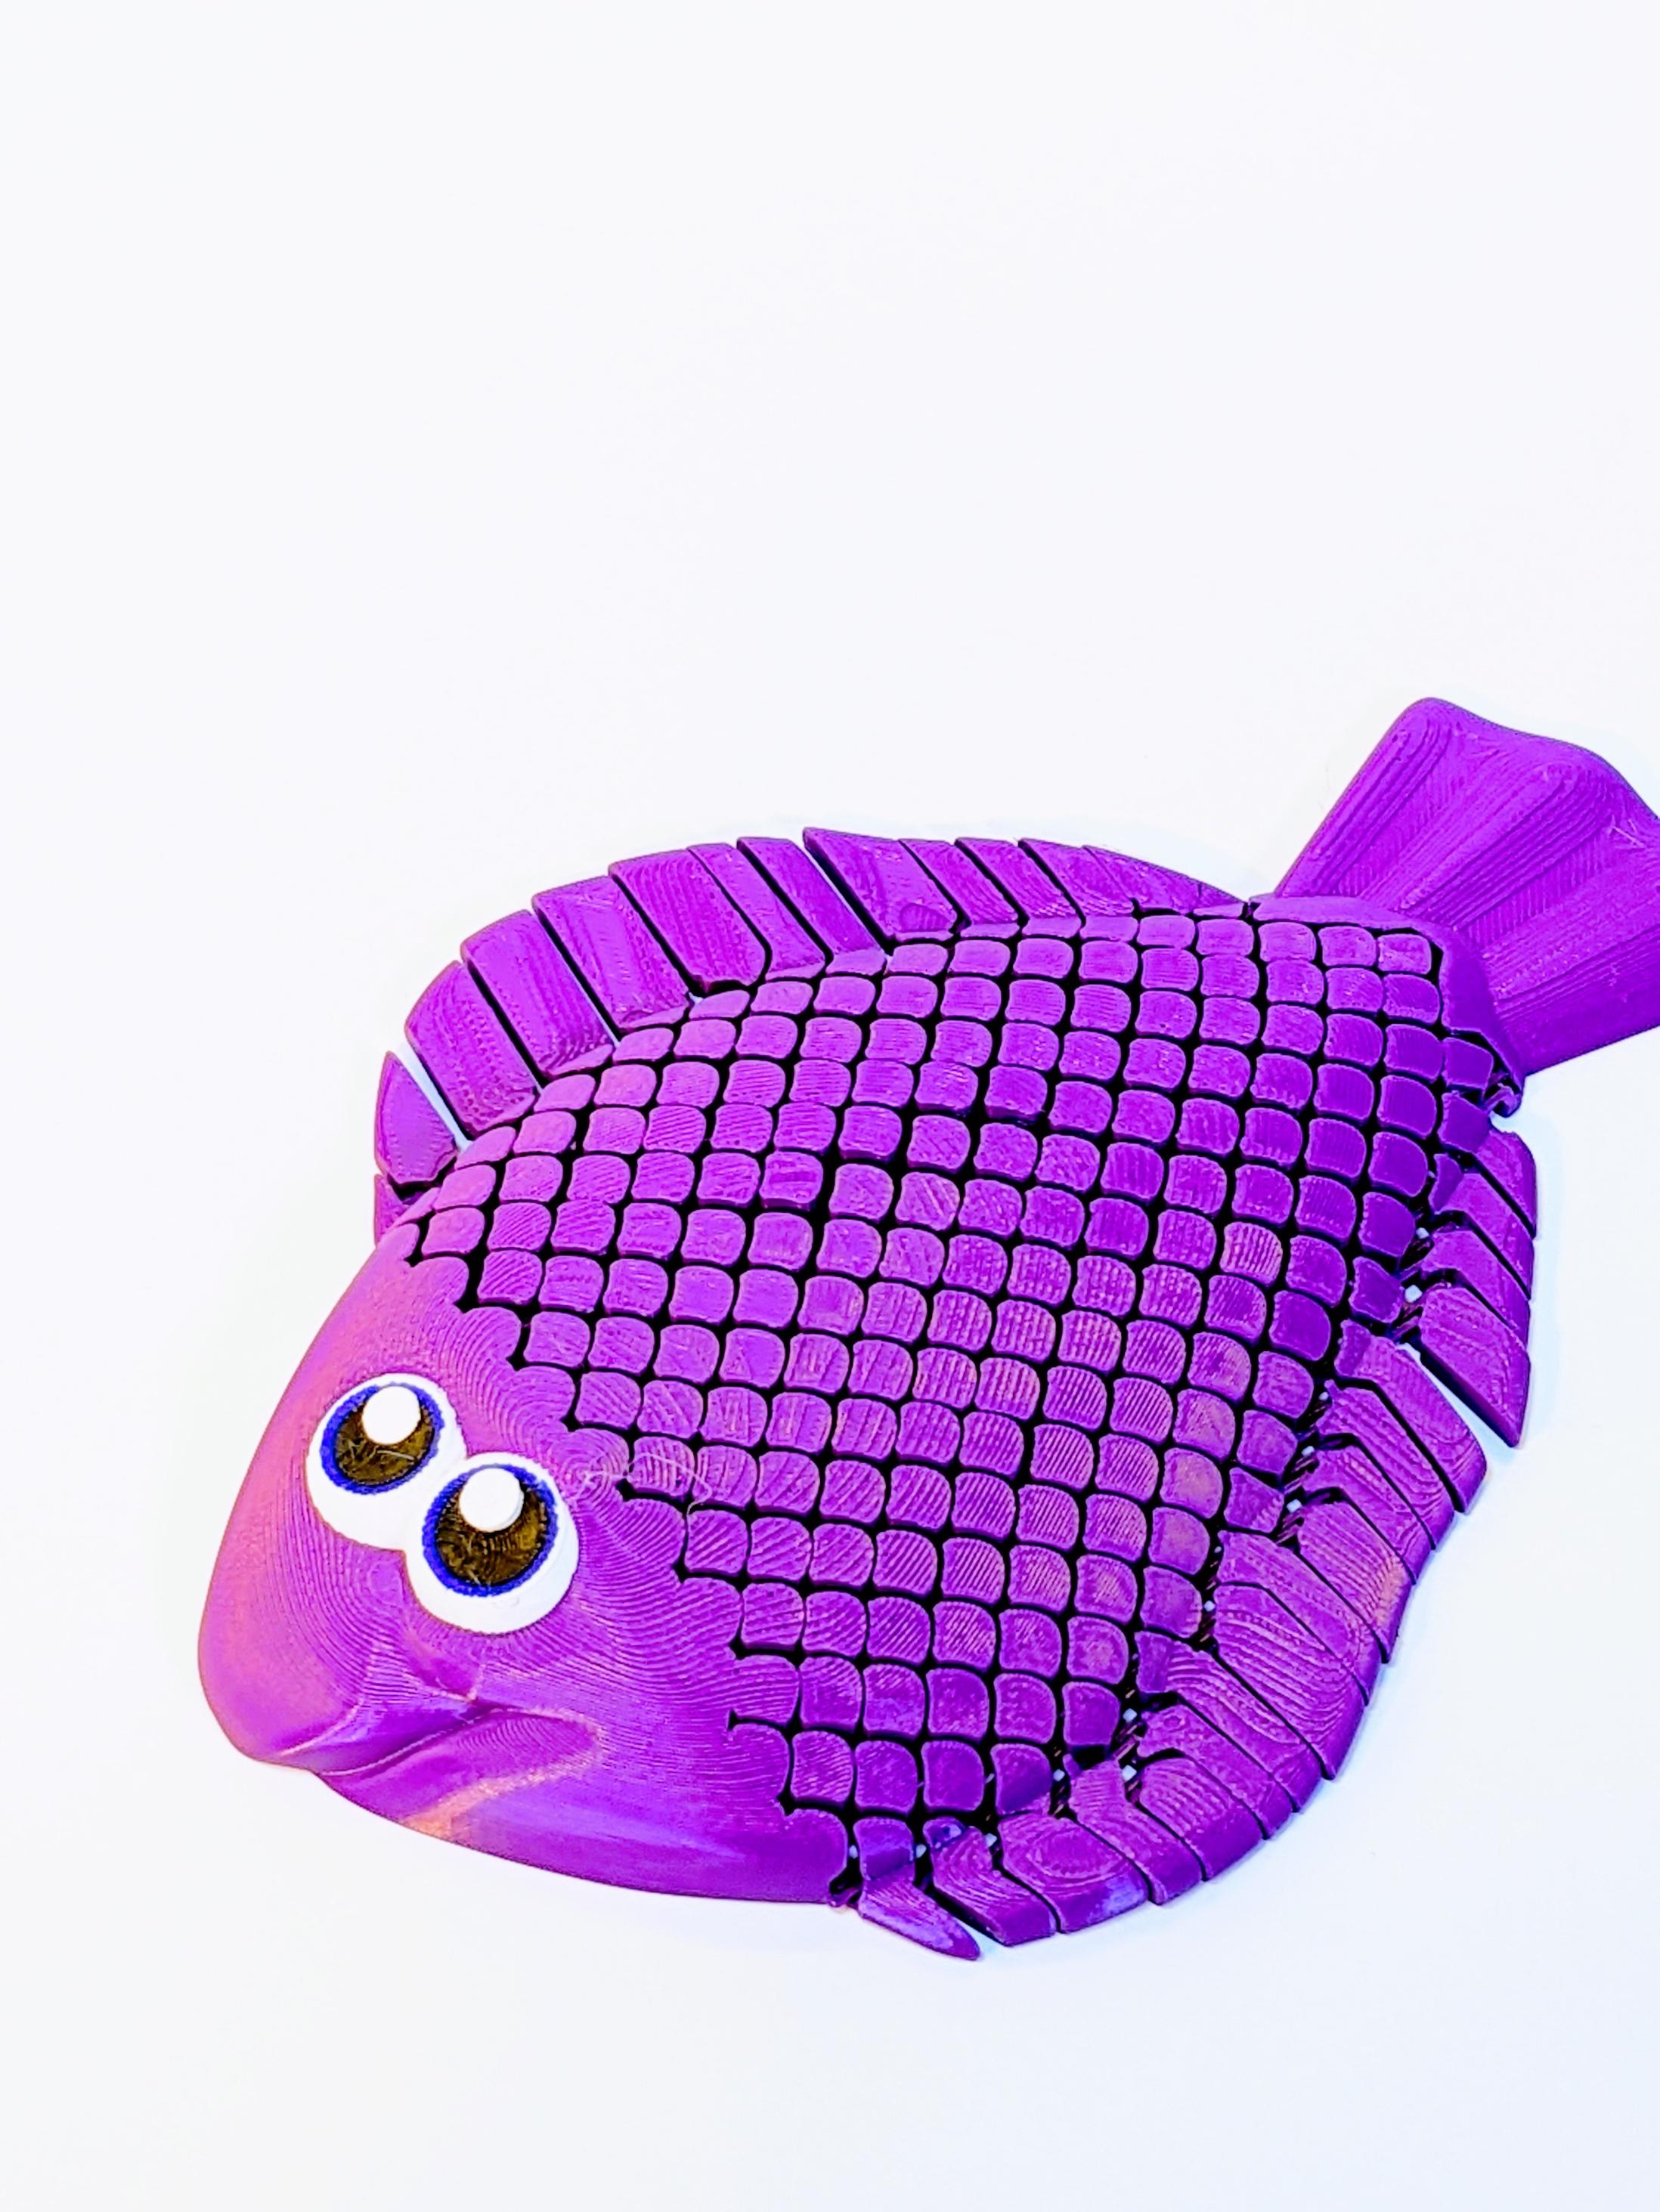 Floppy Flounder - Articulating Fish 3d model